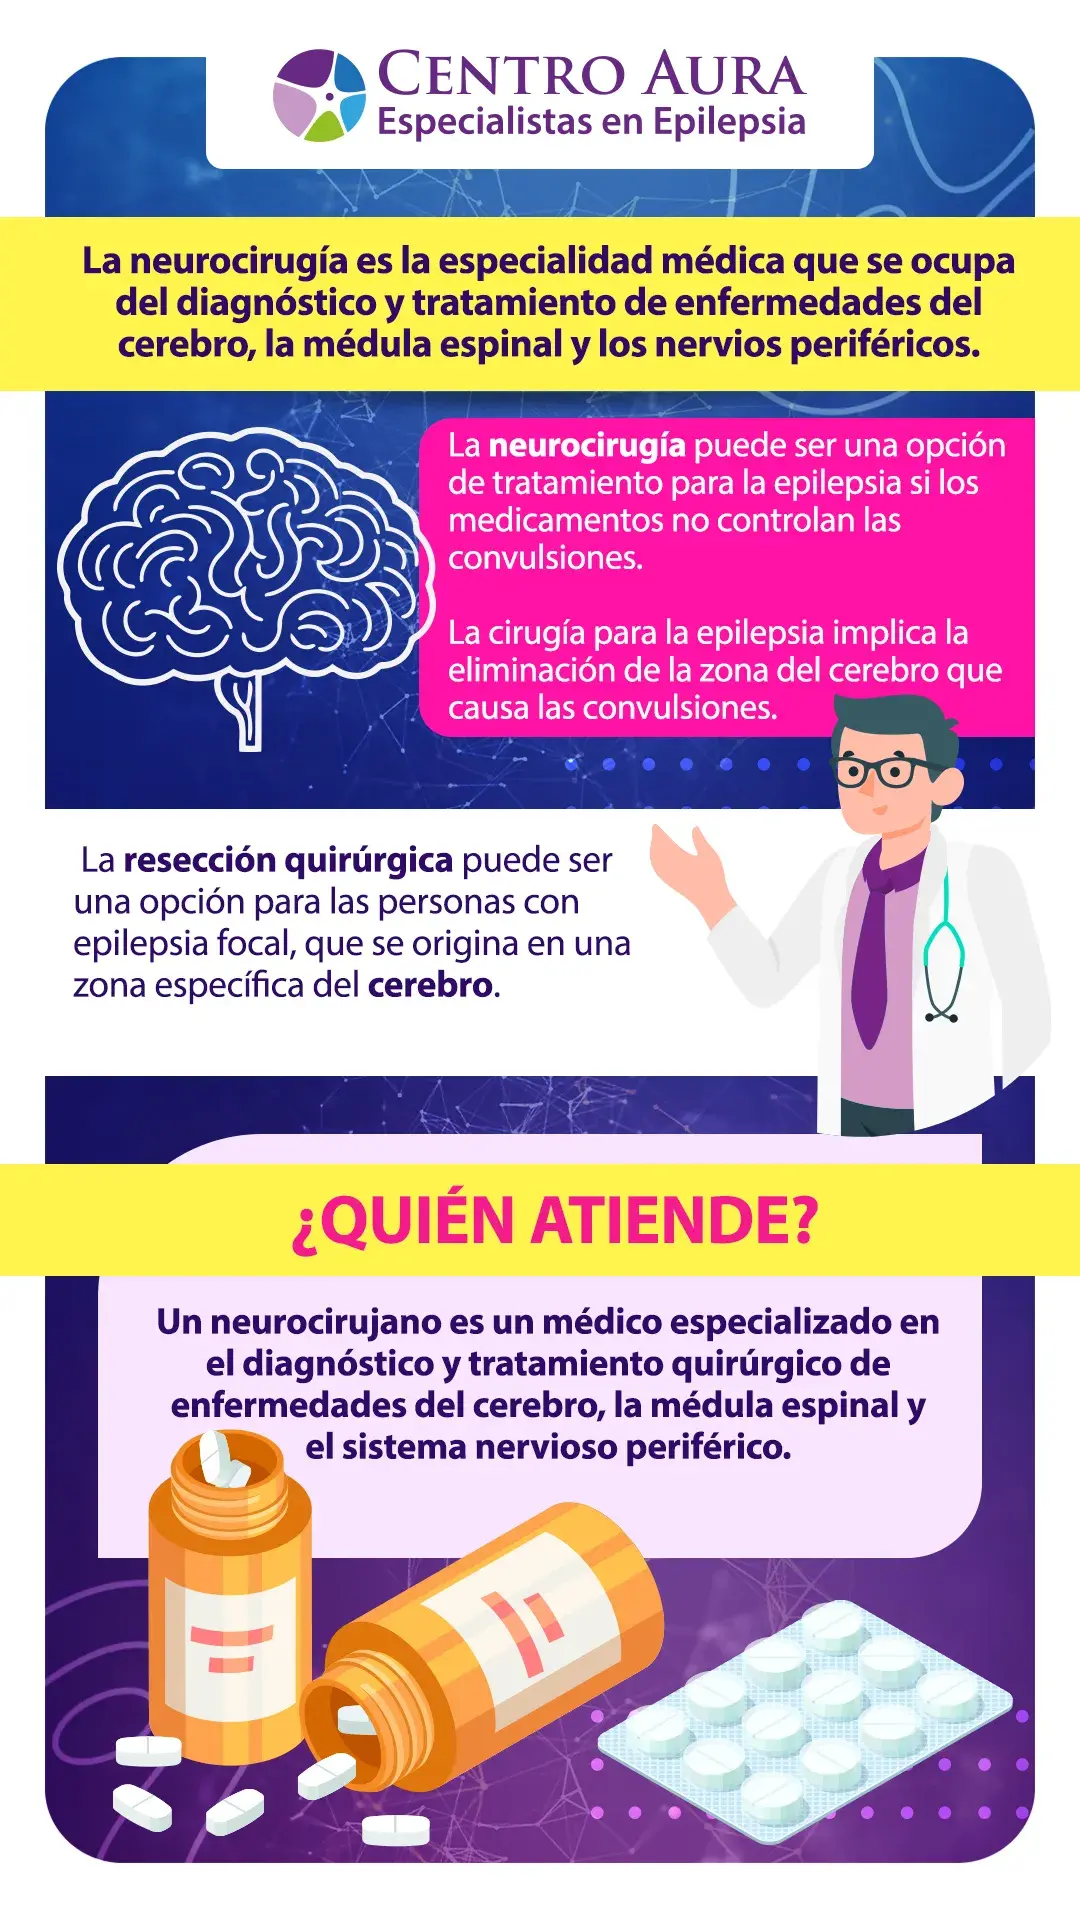 ¿Que es la neurocirugía?